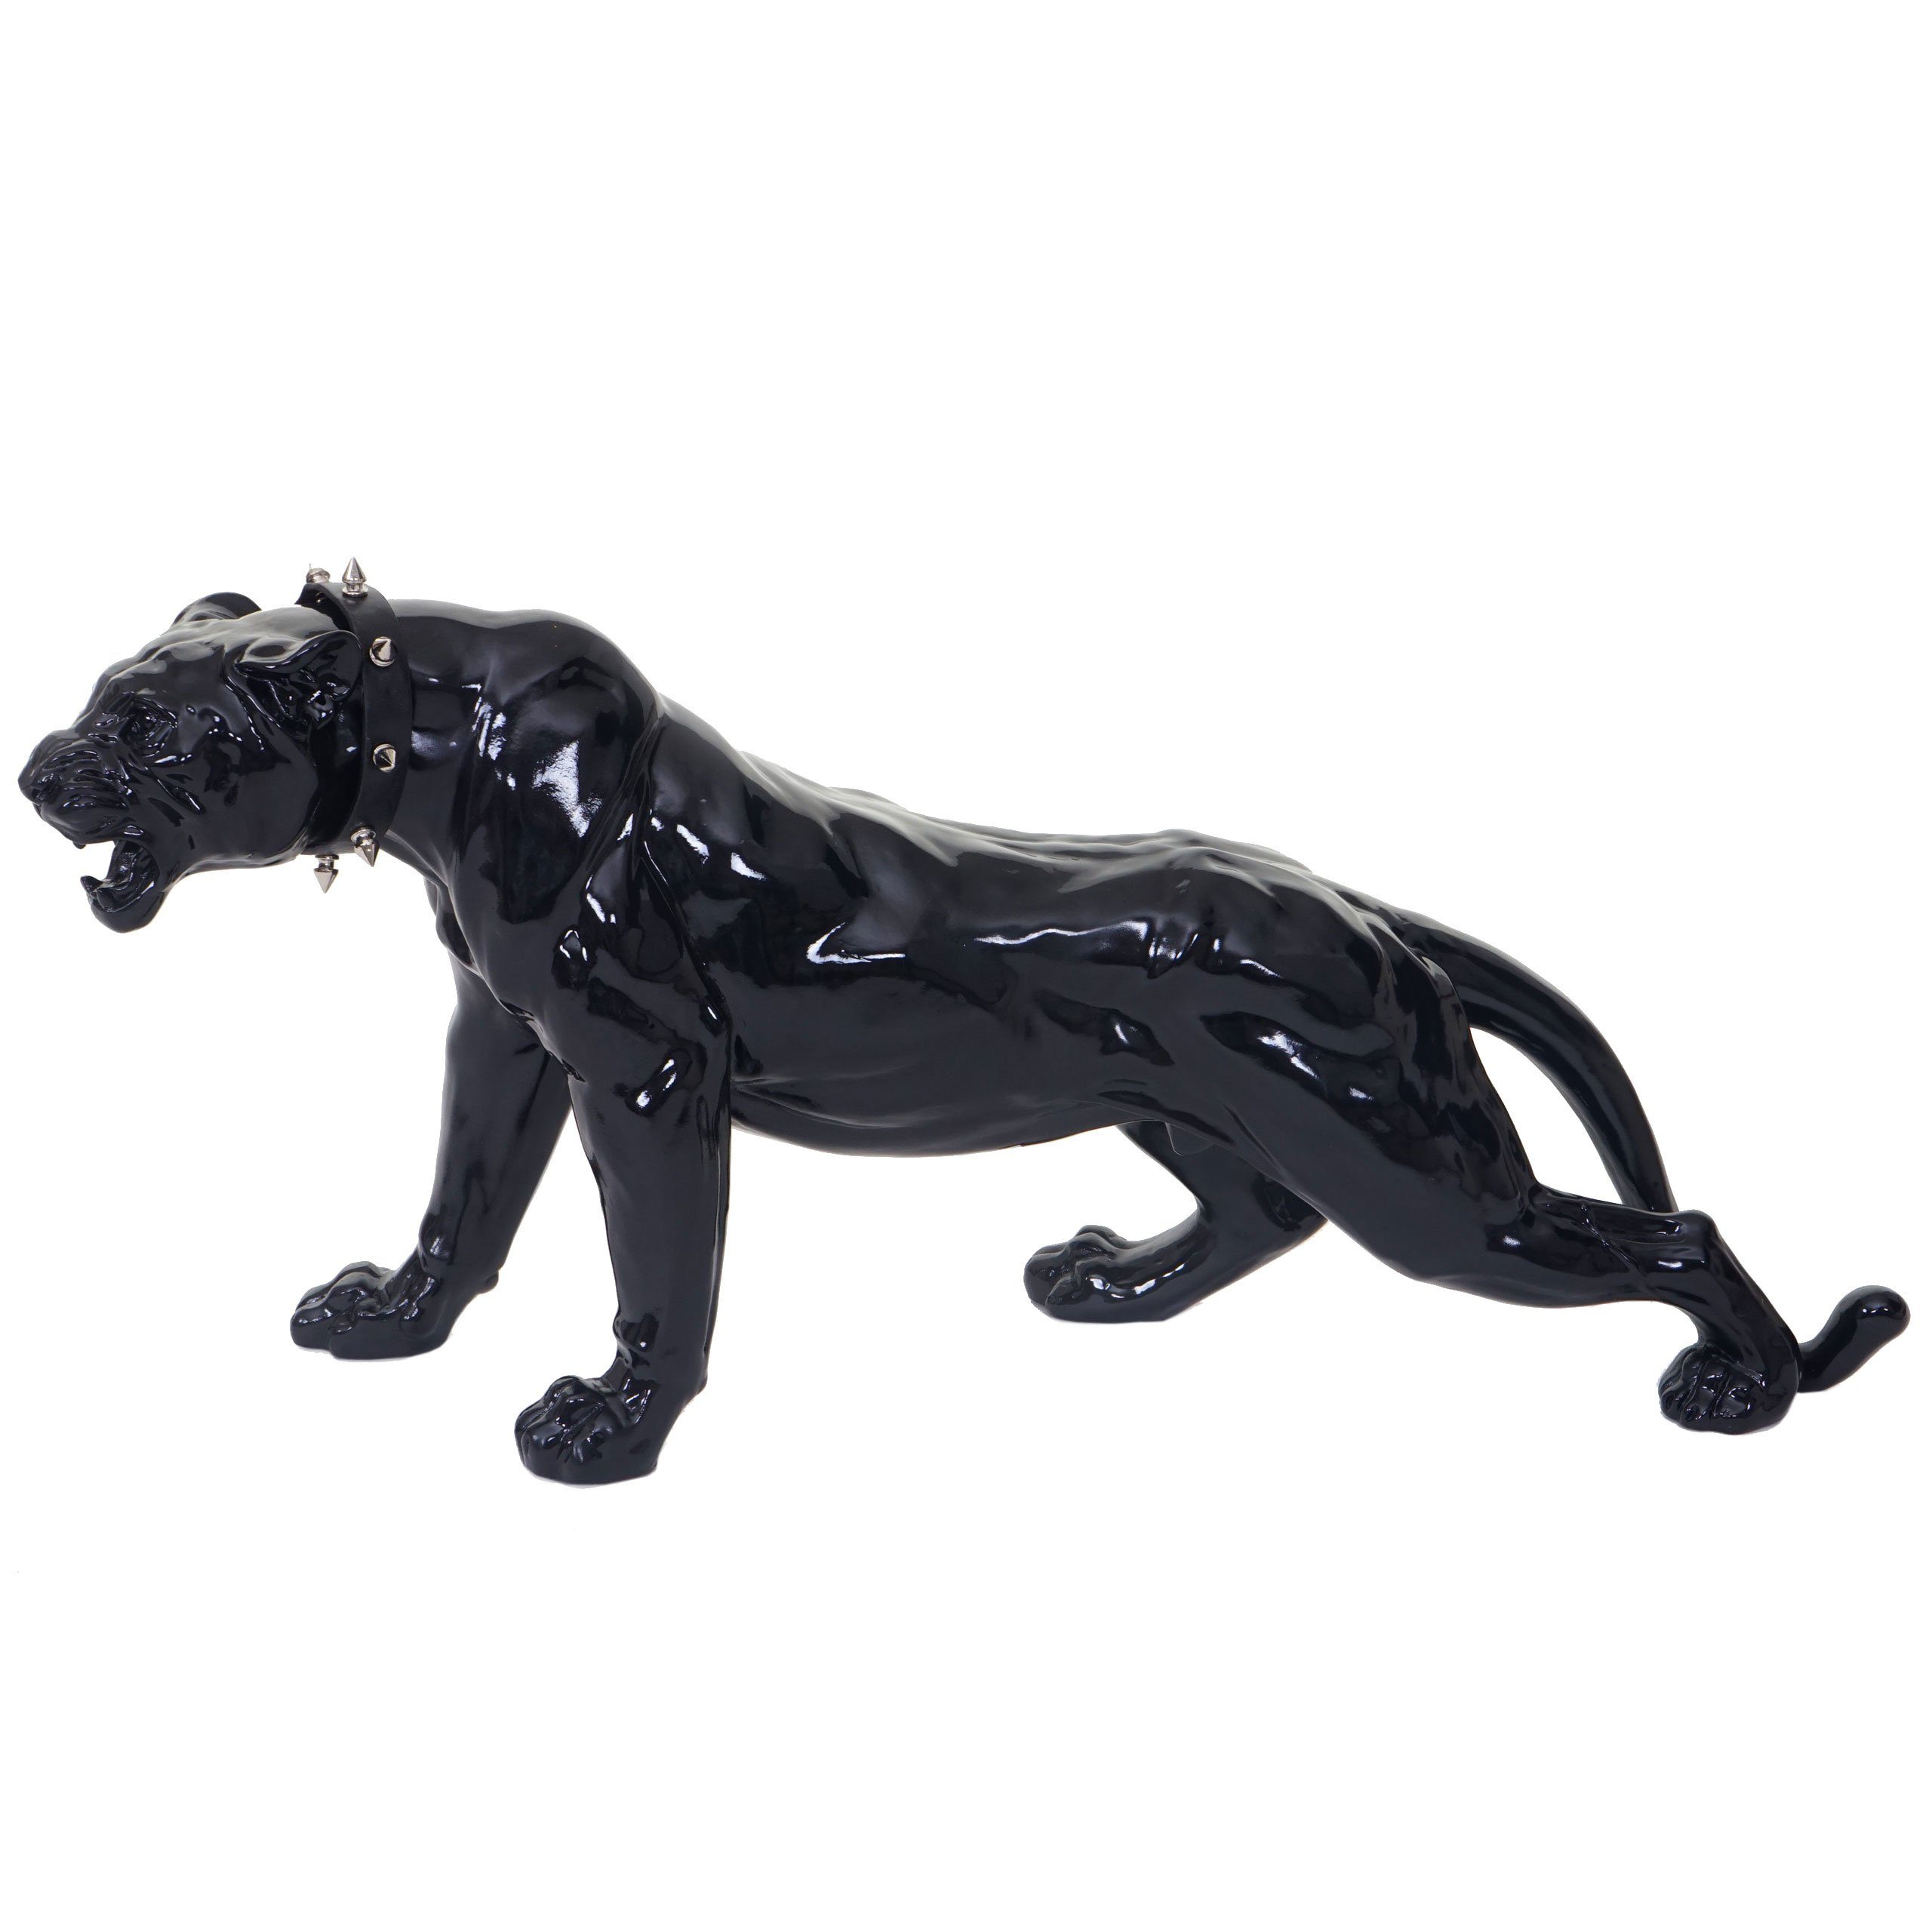 MCW Tierfigur Panther, Indoor/Outdoor-geeignet, Witterungsbeständig, Frostbeständig bis -10° C, Inkl. Halsband schwarz